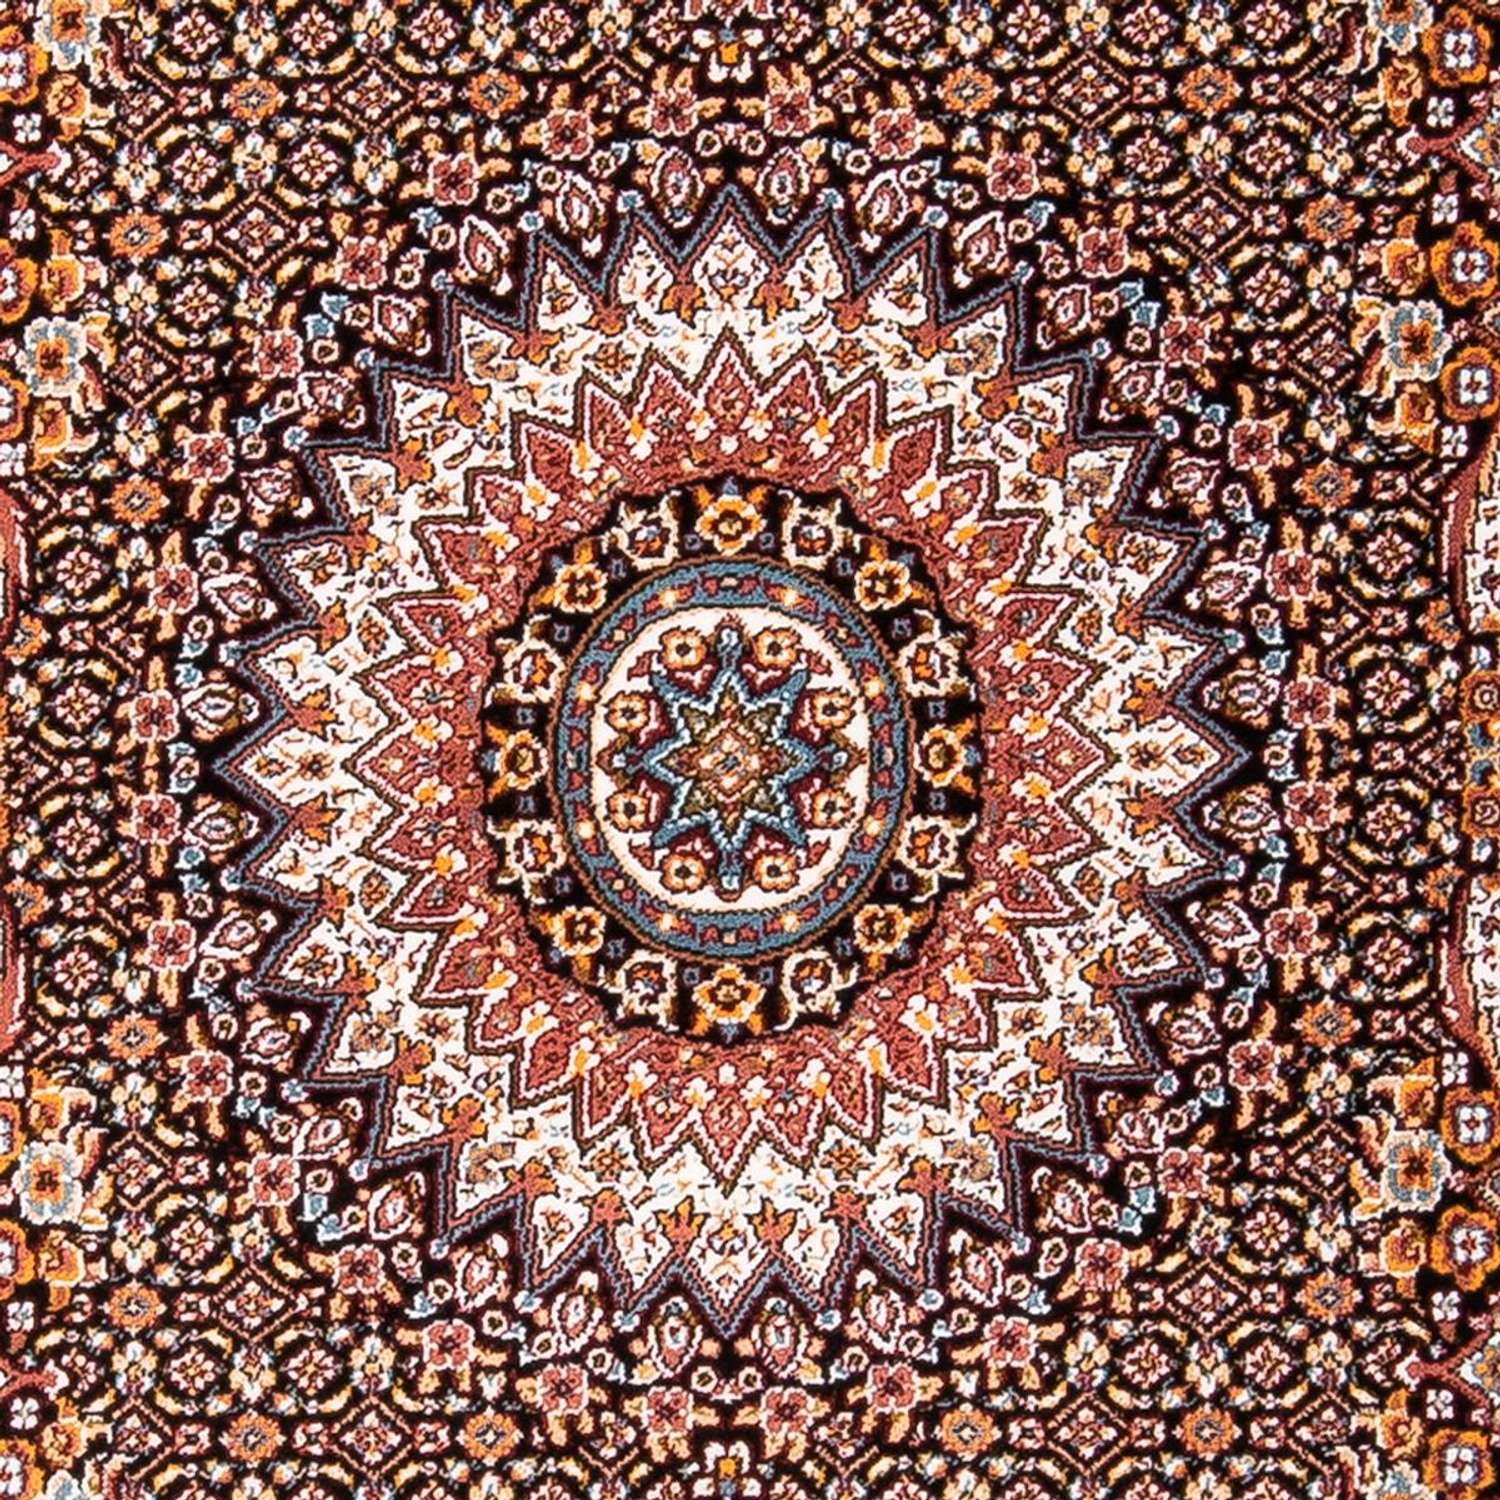 Orientalsk teppe - Aras - rektangulær